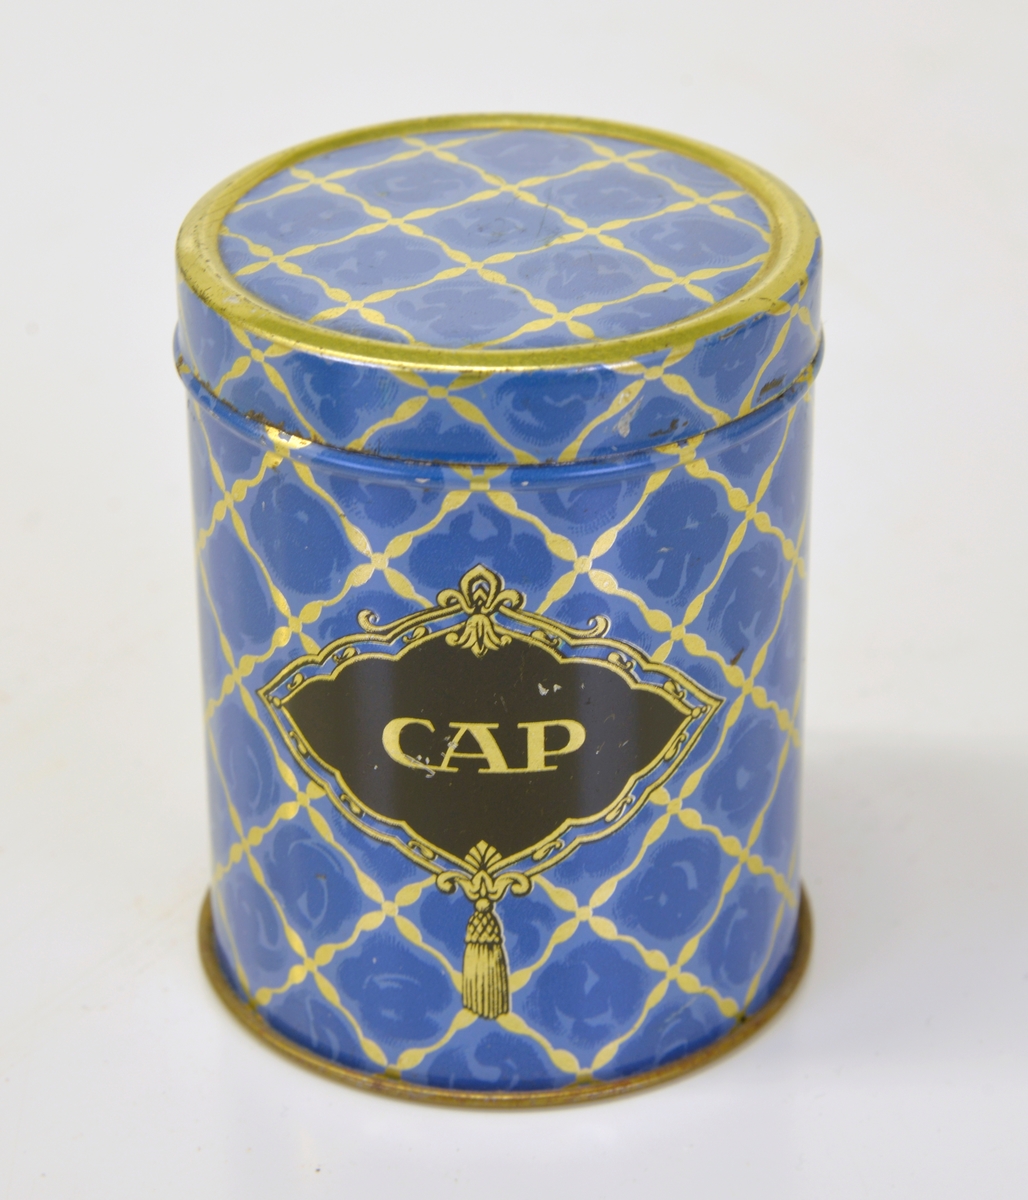 Lackerad i blått/guld med texten: CAP mot svart
botten.
